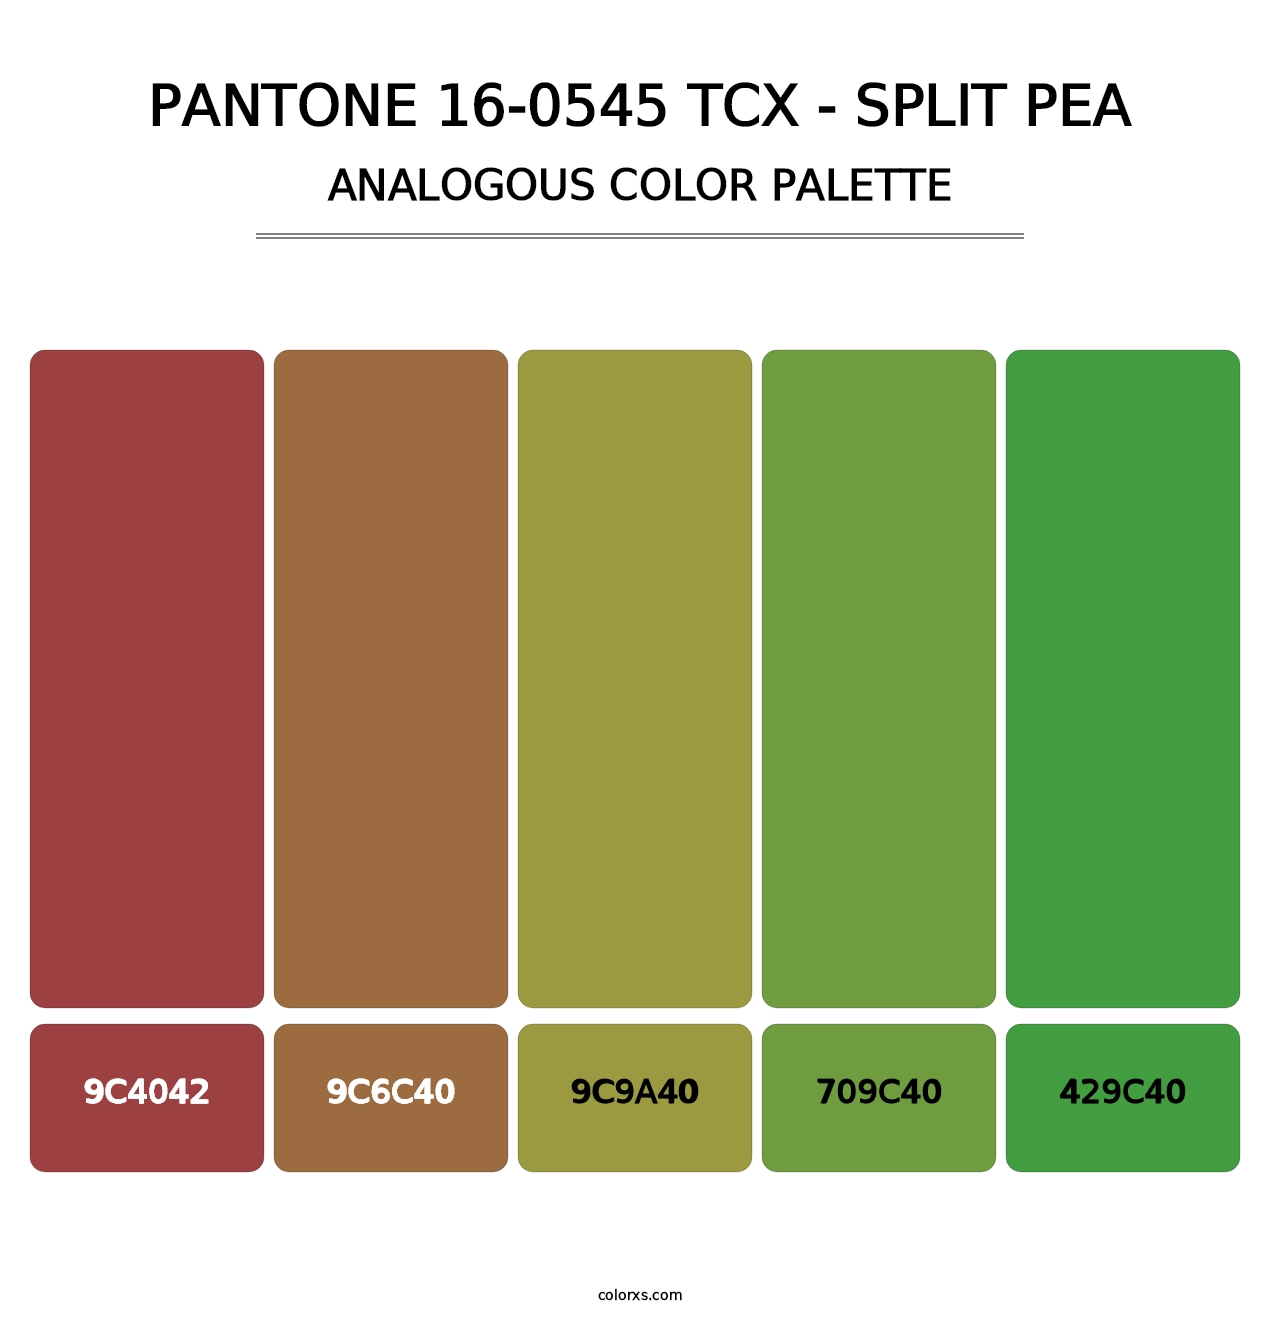 PANTONE 16-0545 TCX - Split Pea - Analogous Color Palette